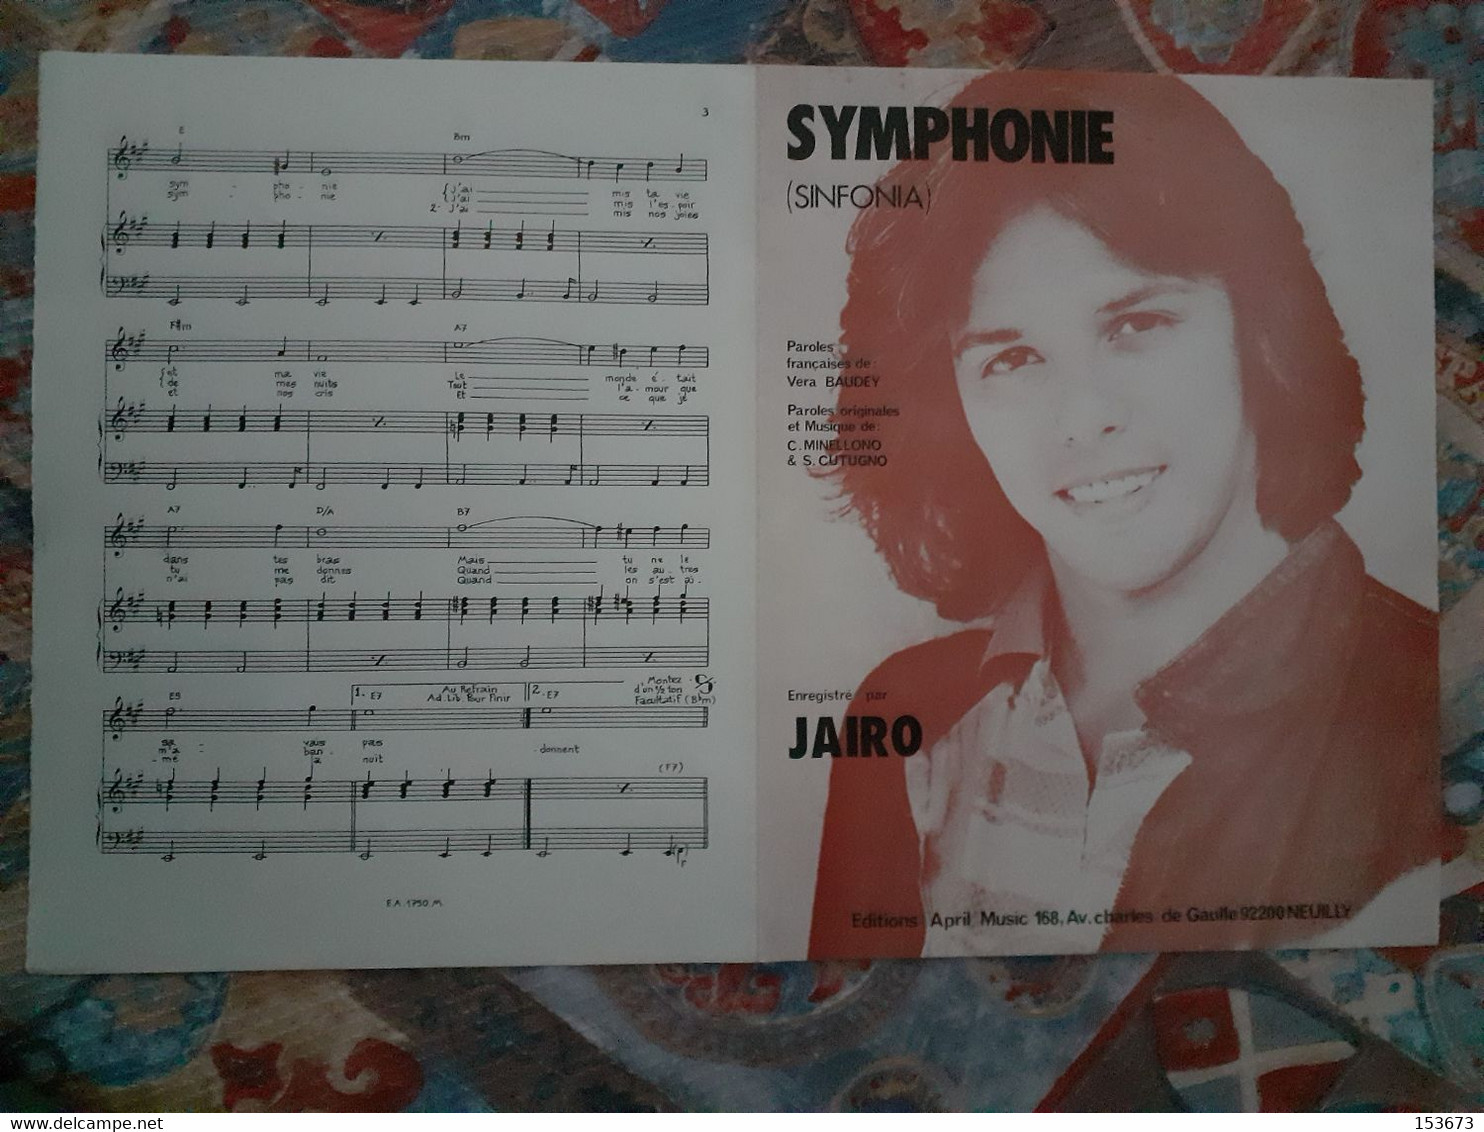 Partition "SYMPHONIE (Sinfonia)" éditions April Music - Neuilly 1981, Enregistré Par JAIRO. - Gesang (solo)